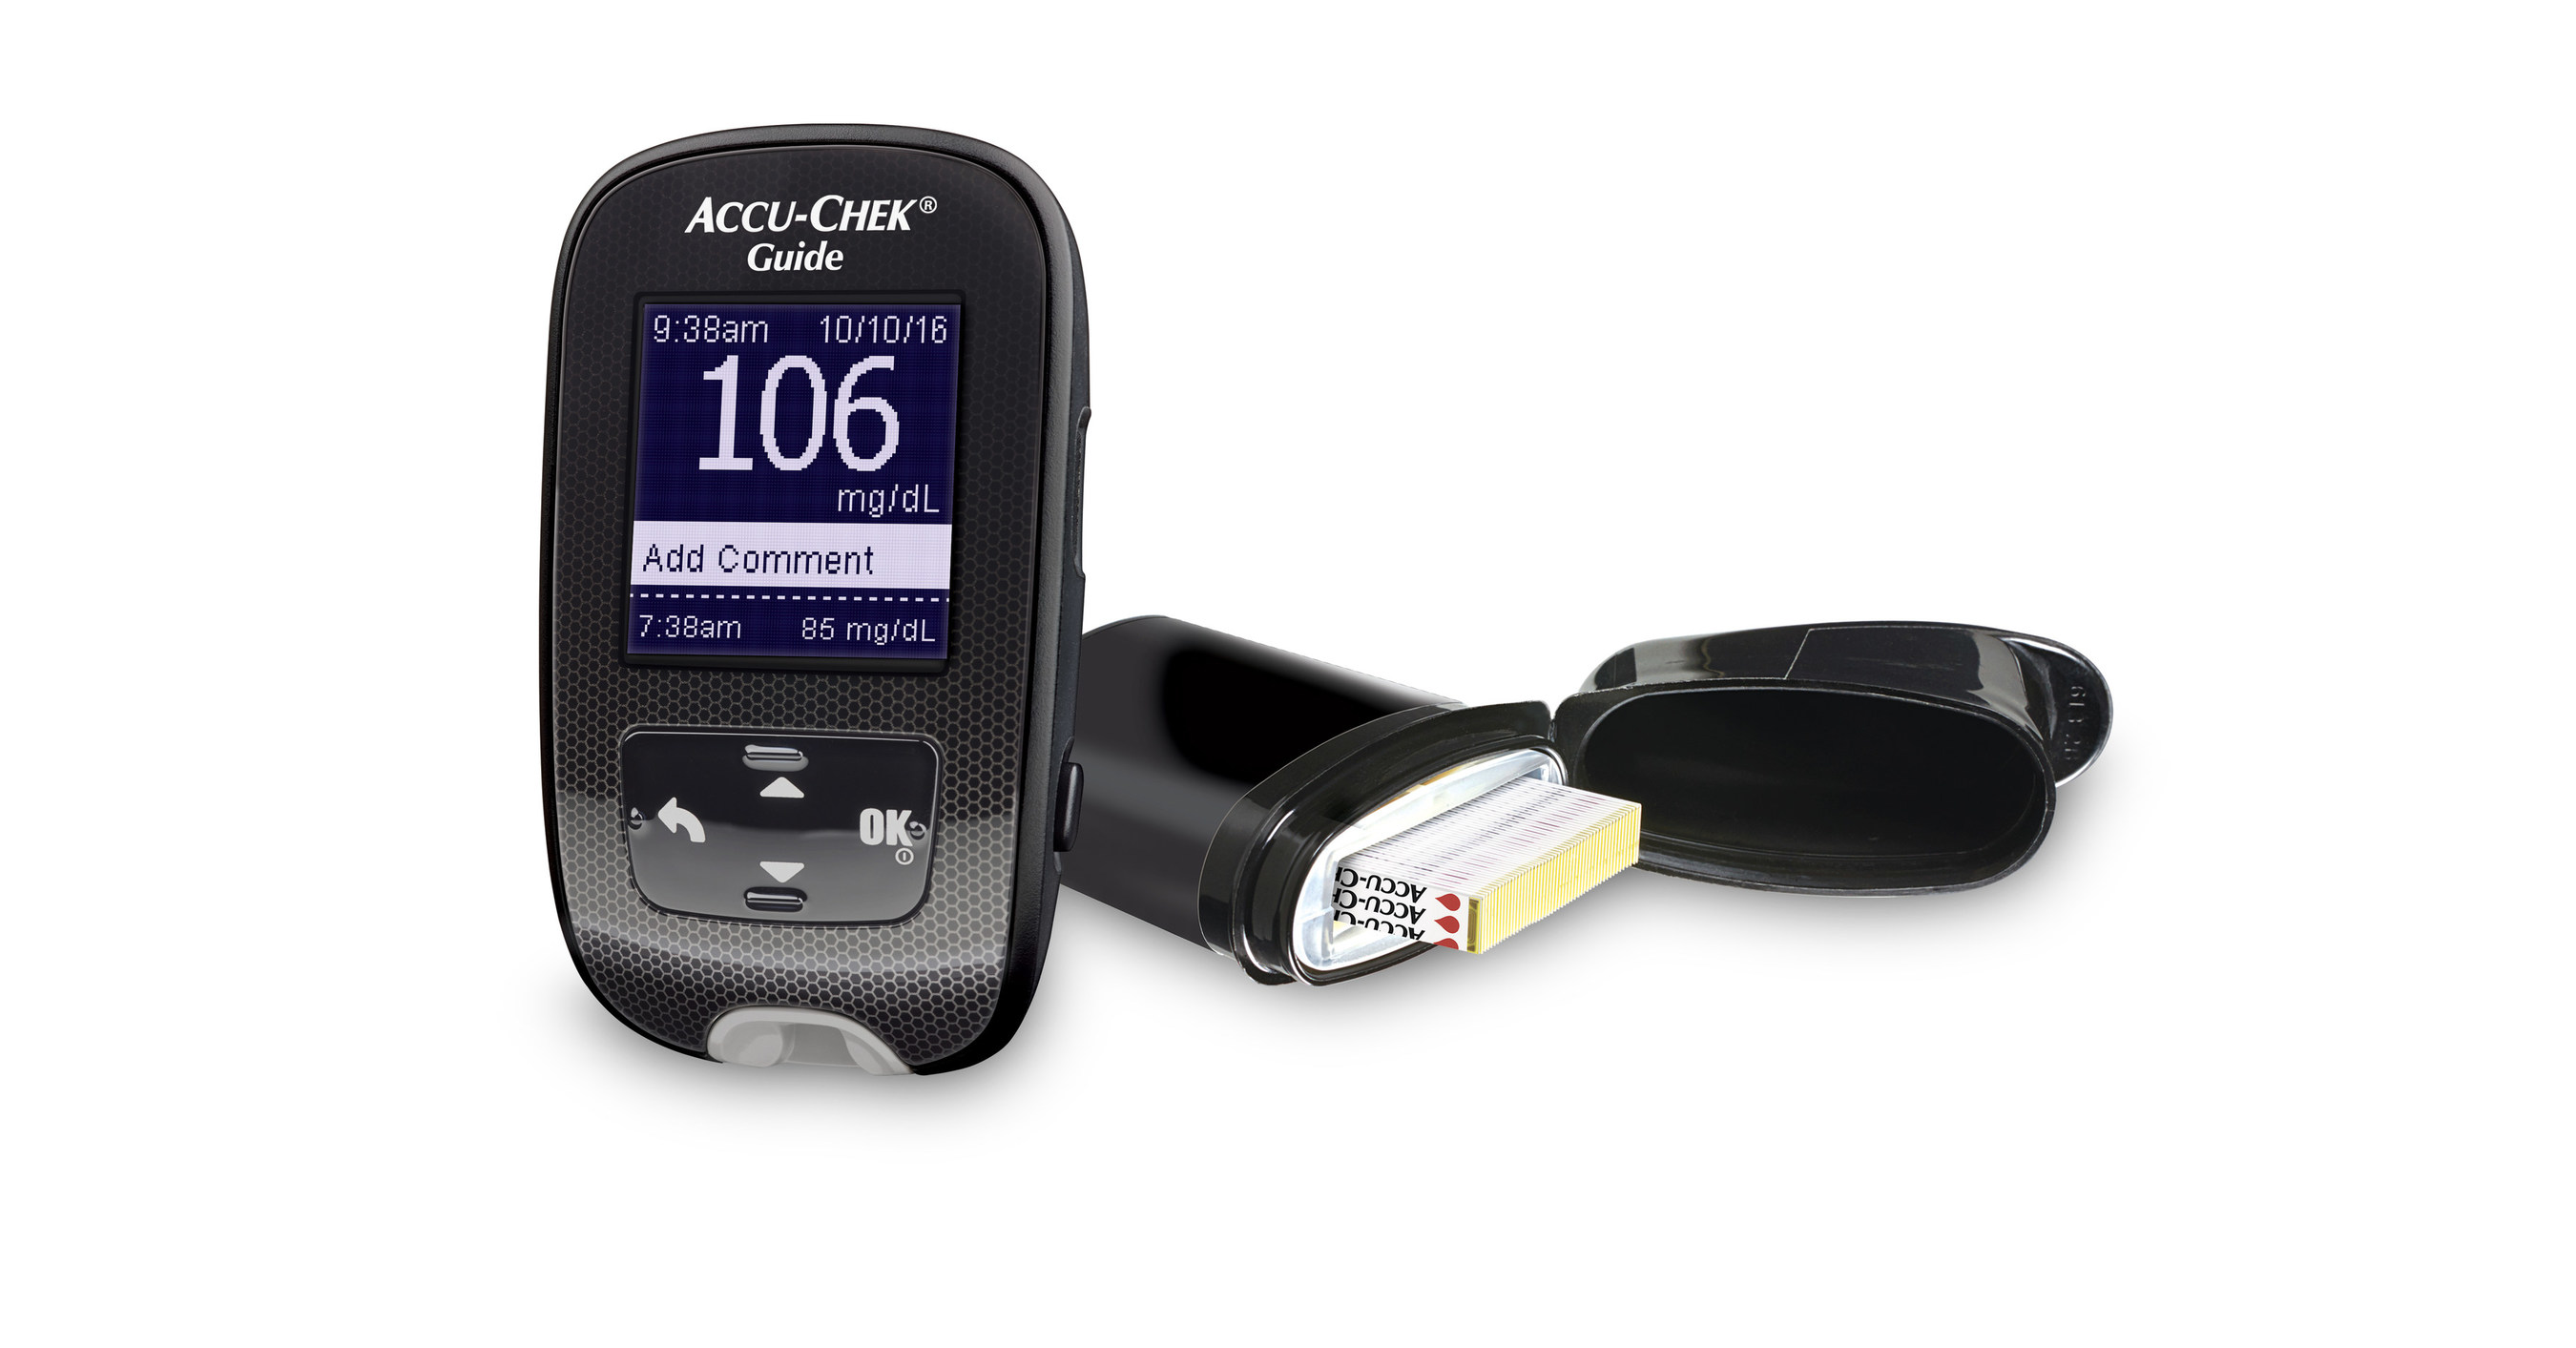 Roche Accu-Chek Guide Blood Glucose Meter